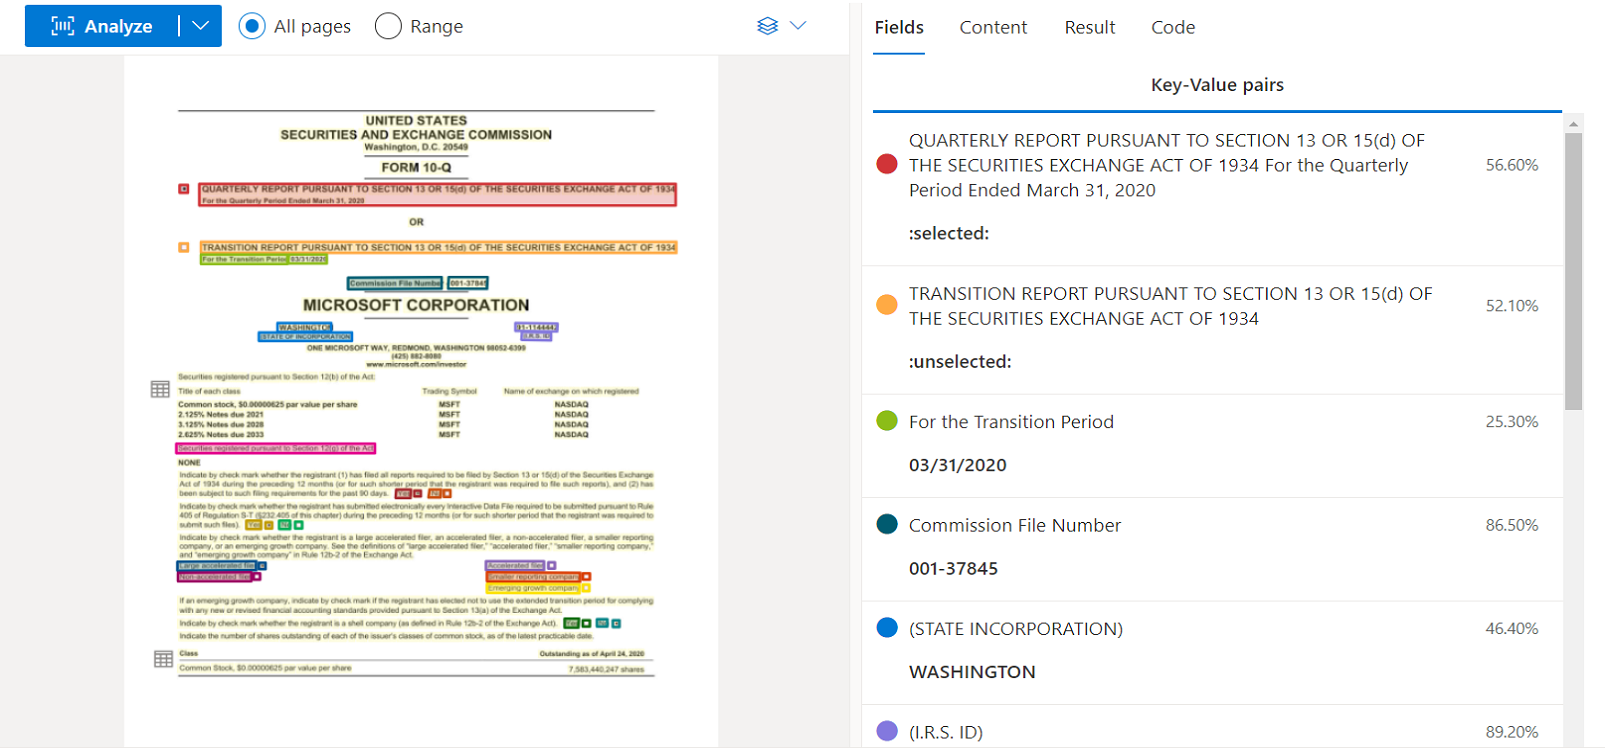 Captura de tela da Análise geral do modelo de documento usando o Estúdio de Informação de Documentos.